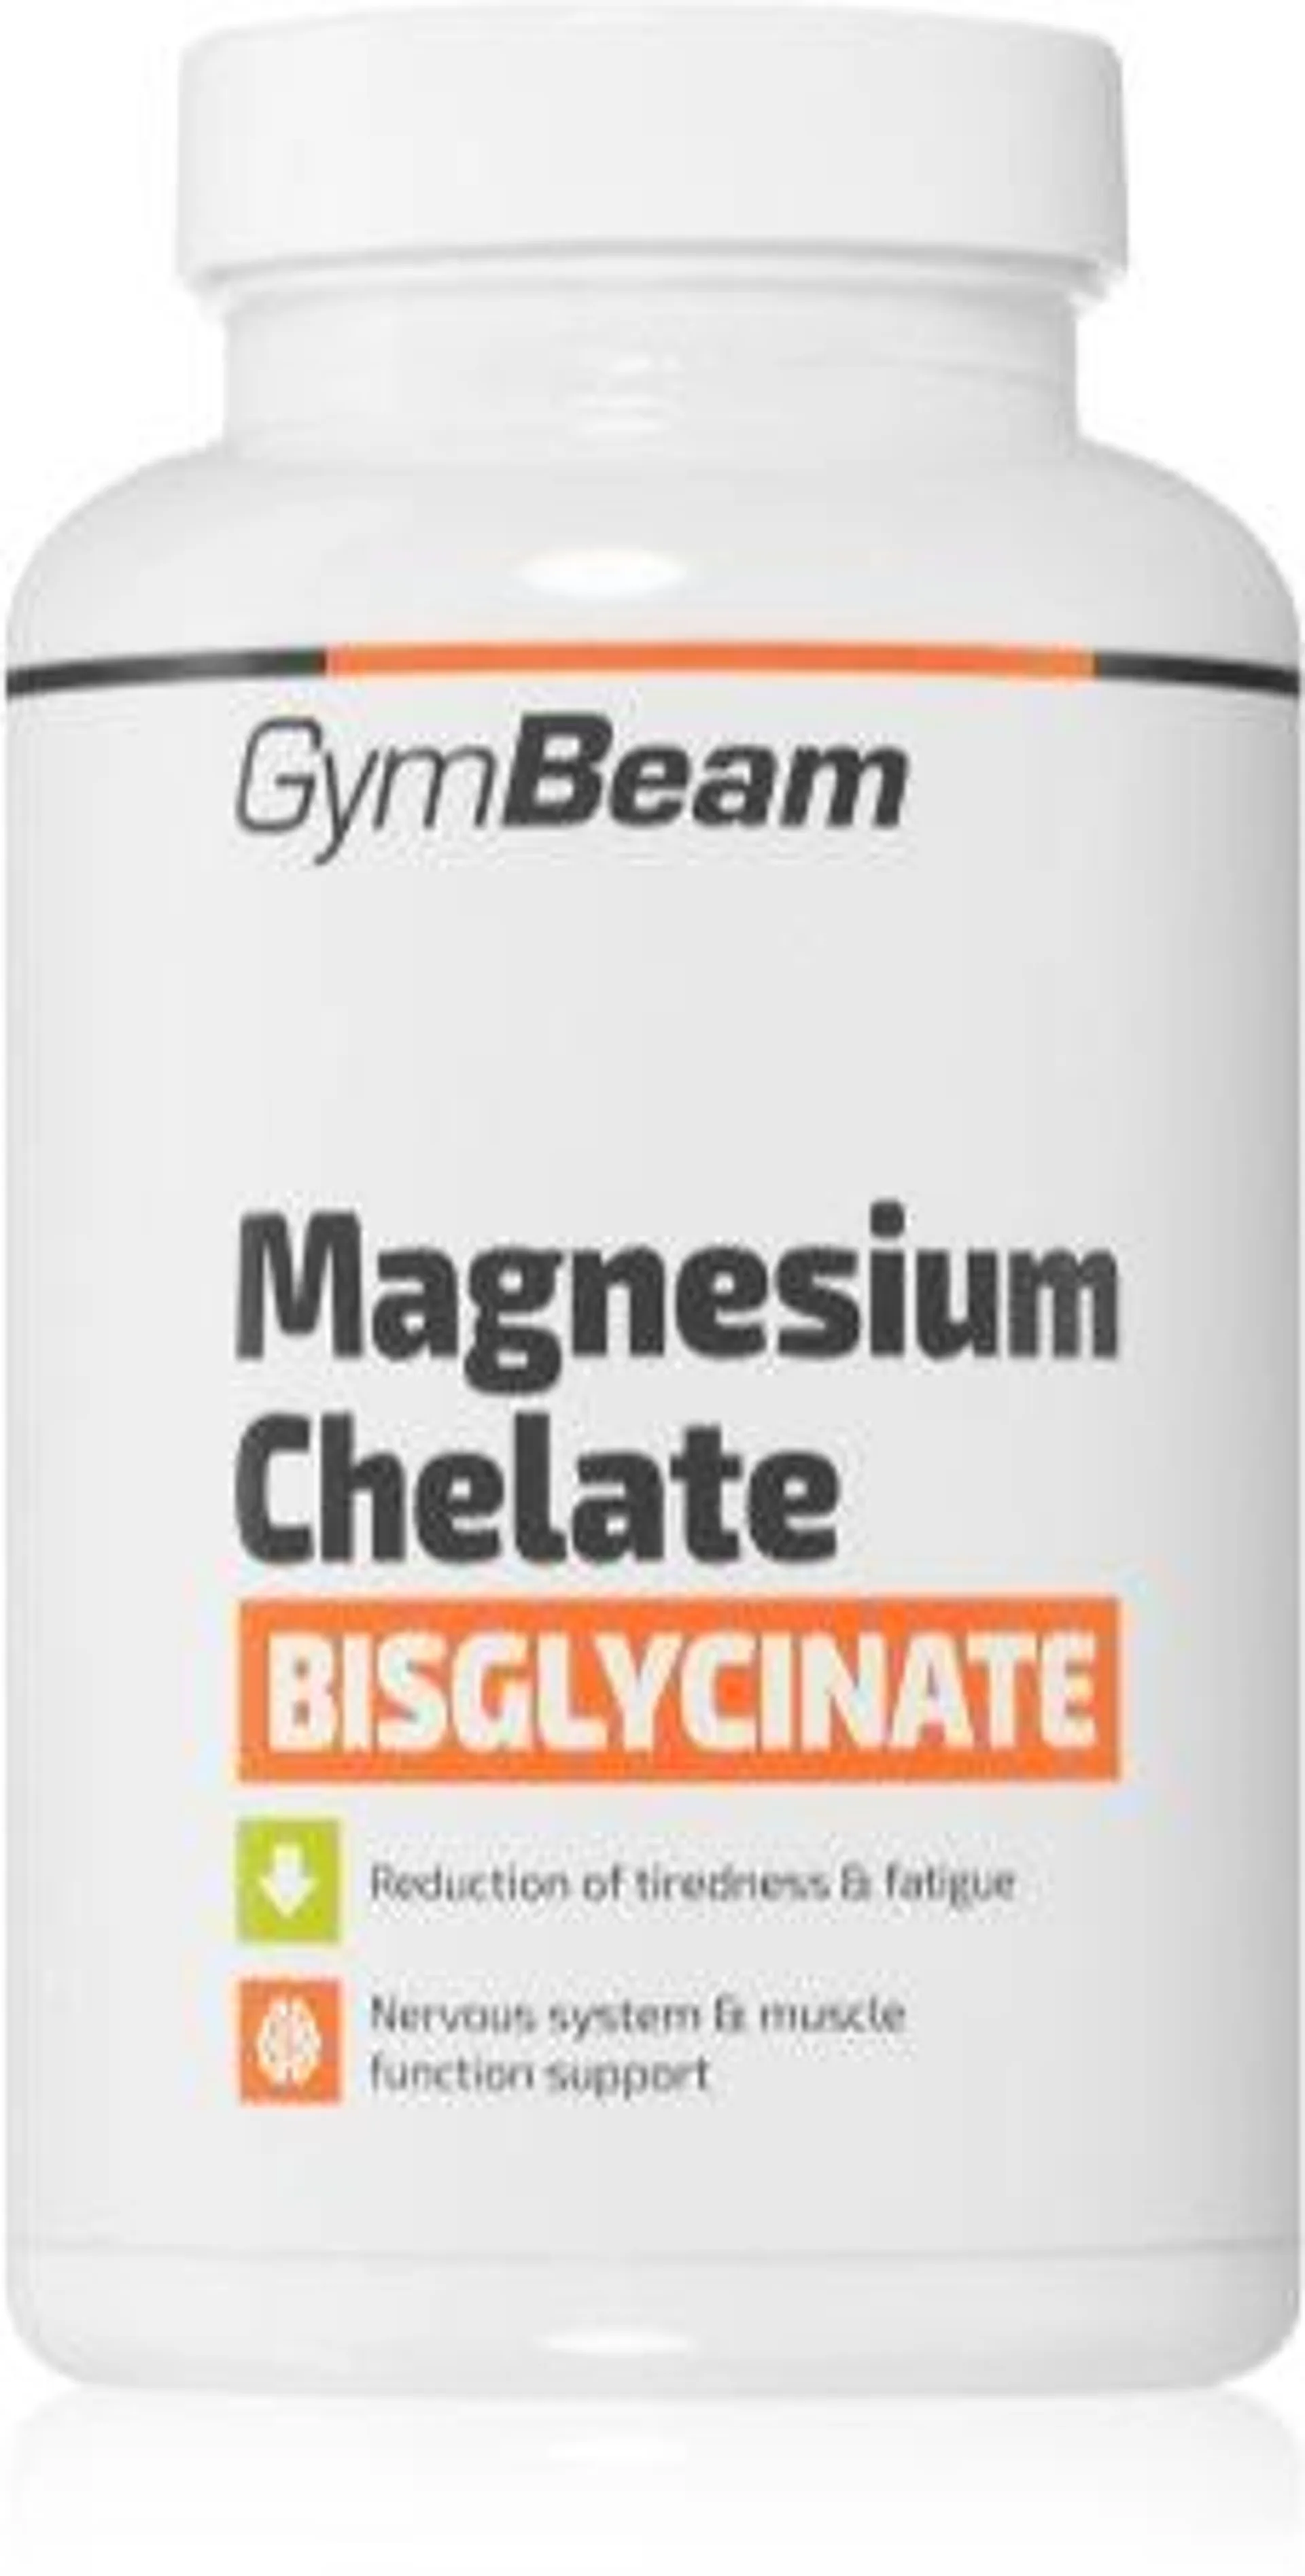 Magnesium Chelate Bisglycinate